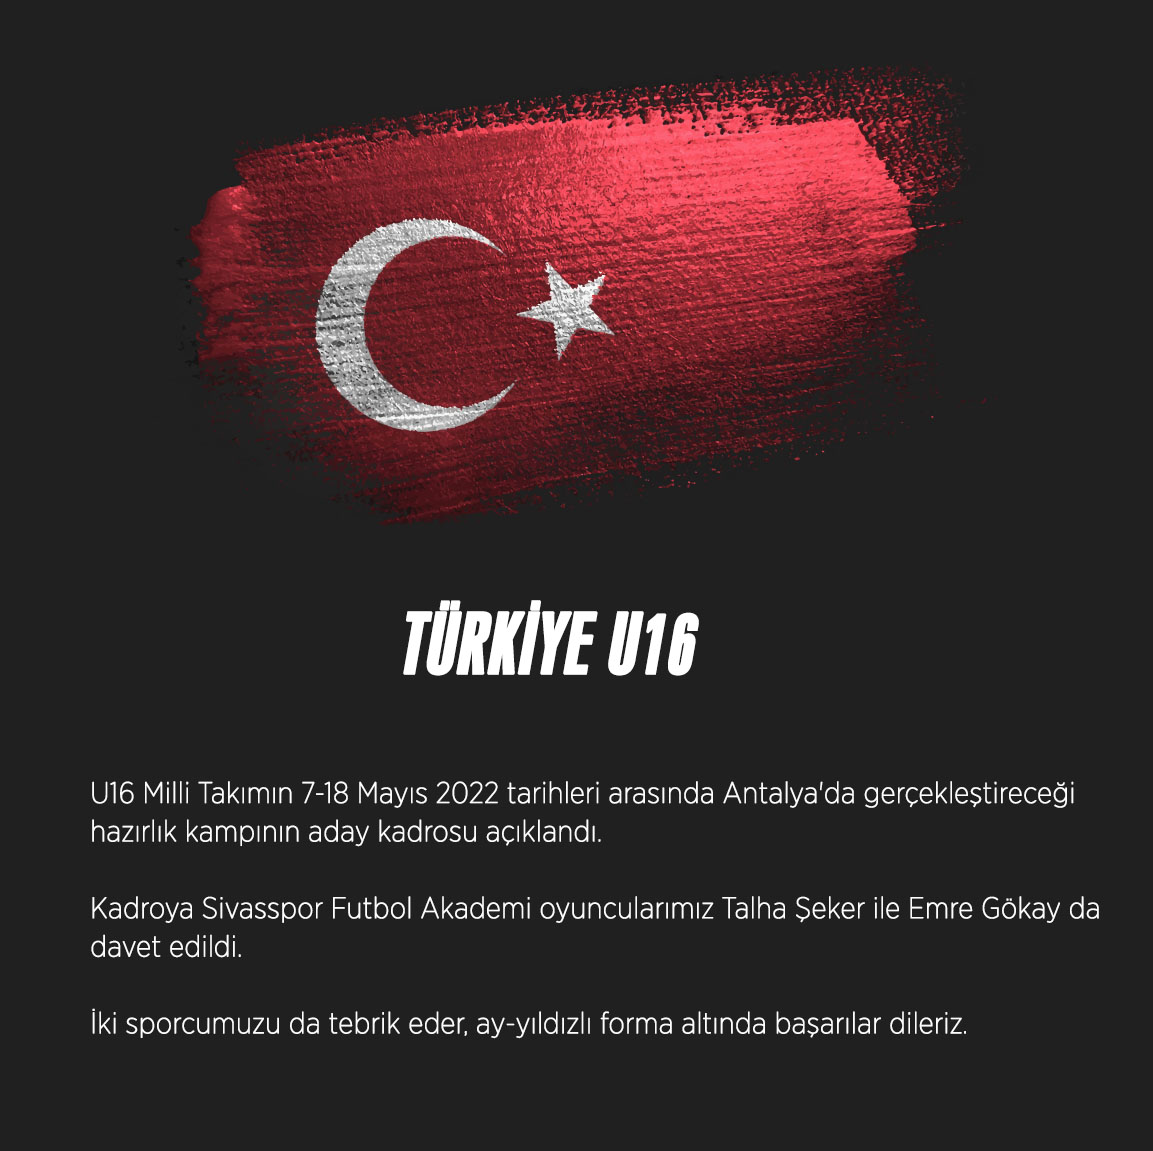 U16 Milli Takımın 7-18 Mayıs 2022 tarihleri arasında Antalya'da gerçekleştireceği hazırlık kampının aday kadrosu açıklandı. Kadroya Sivasspor Futbol Akademi oyuncularımız Talha Şeker ile Emre Gökay da davet edildi.